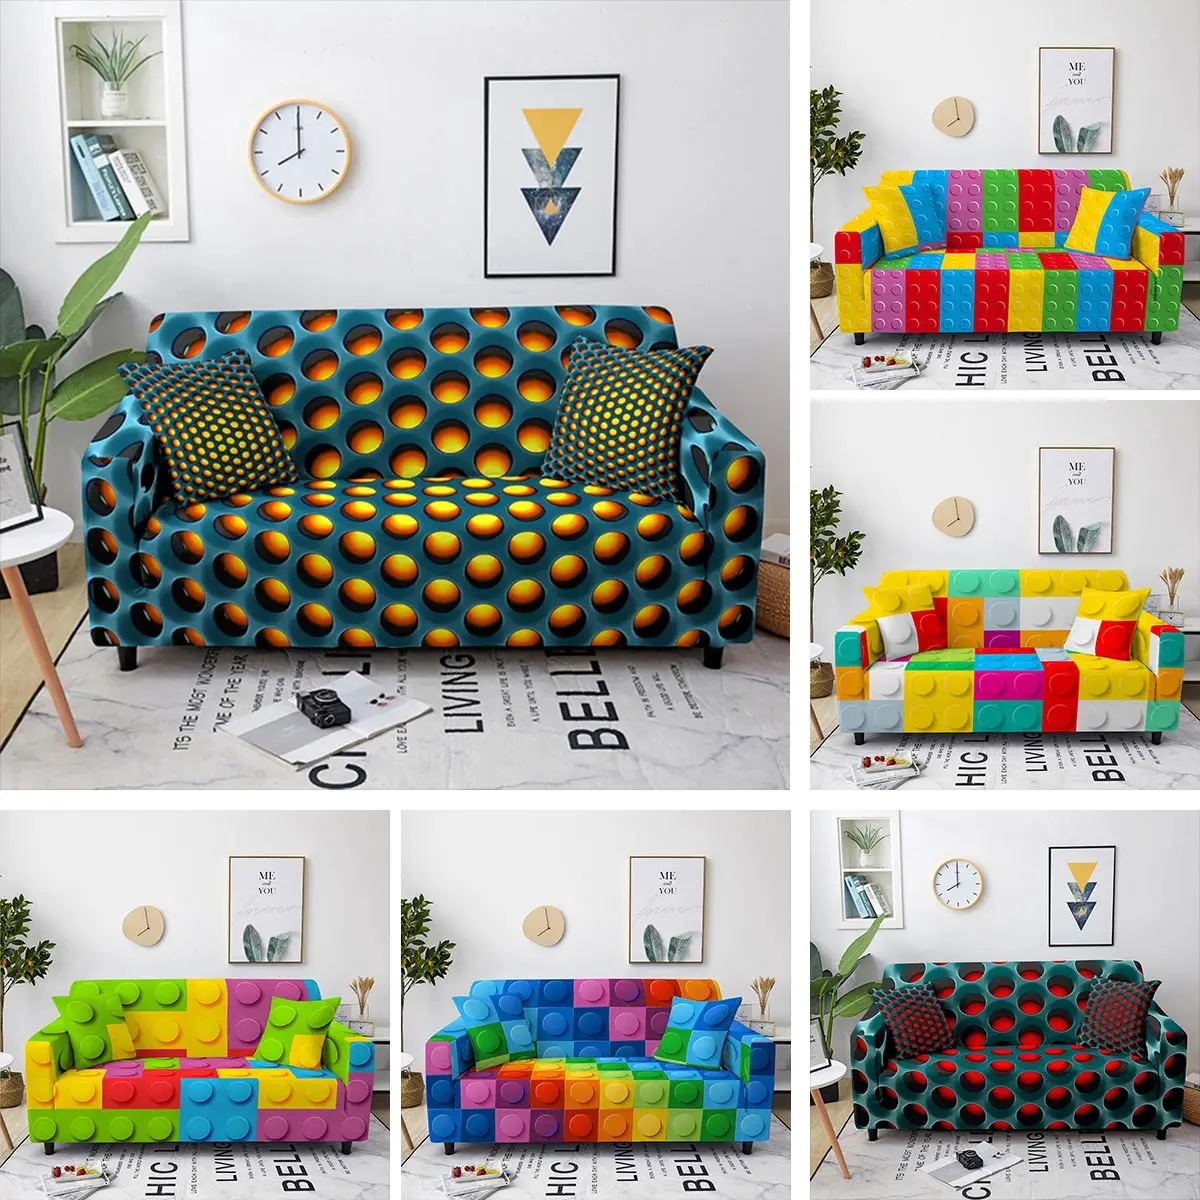 

Чехлы для диванов на 1/2/3/4 мест, эластичные, с геометрическим рисунком радуги, защита мебели